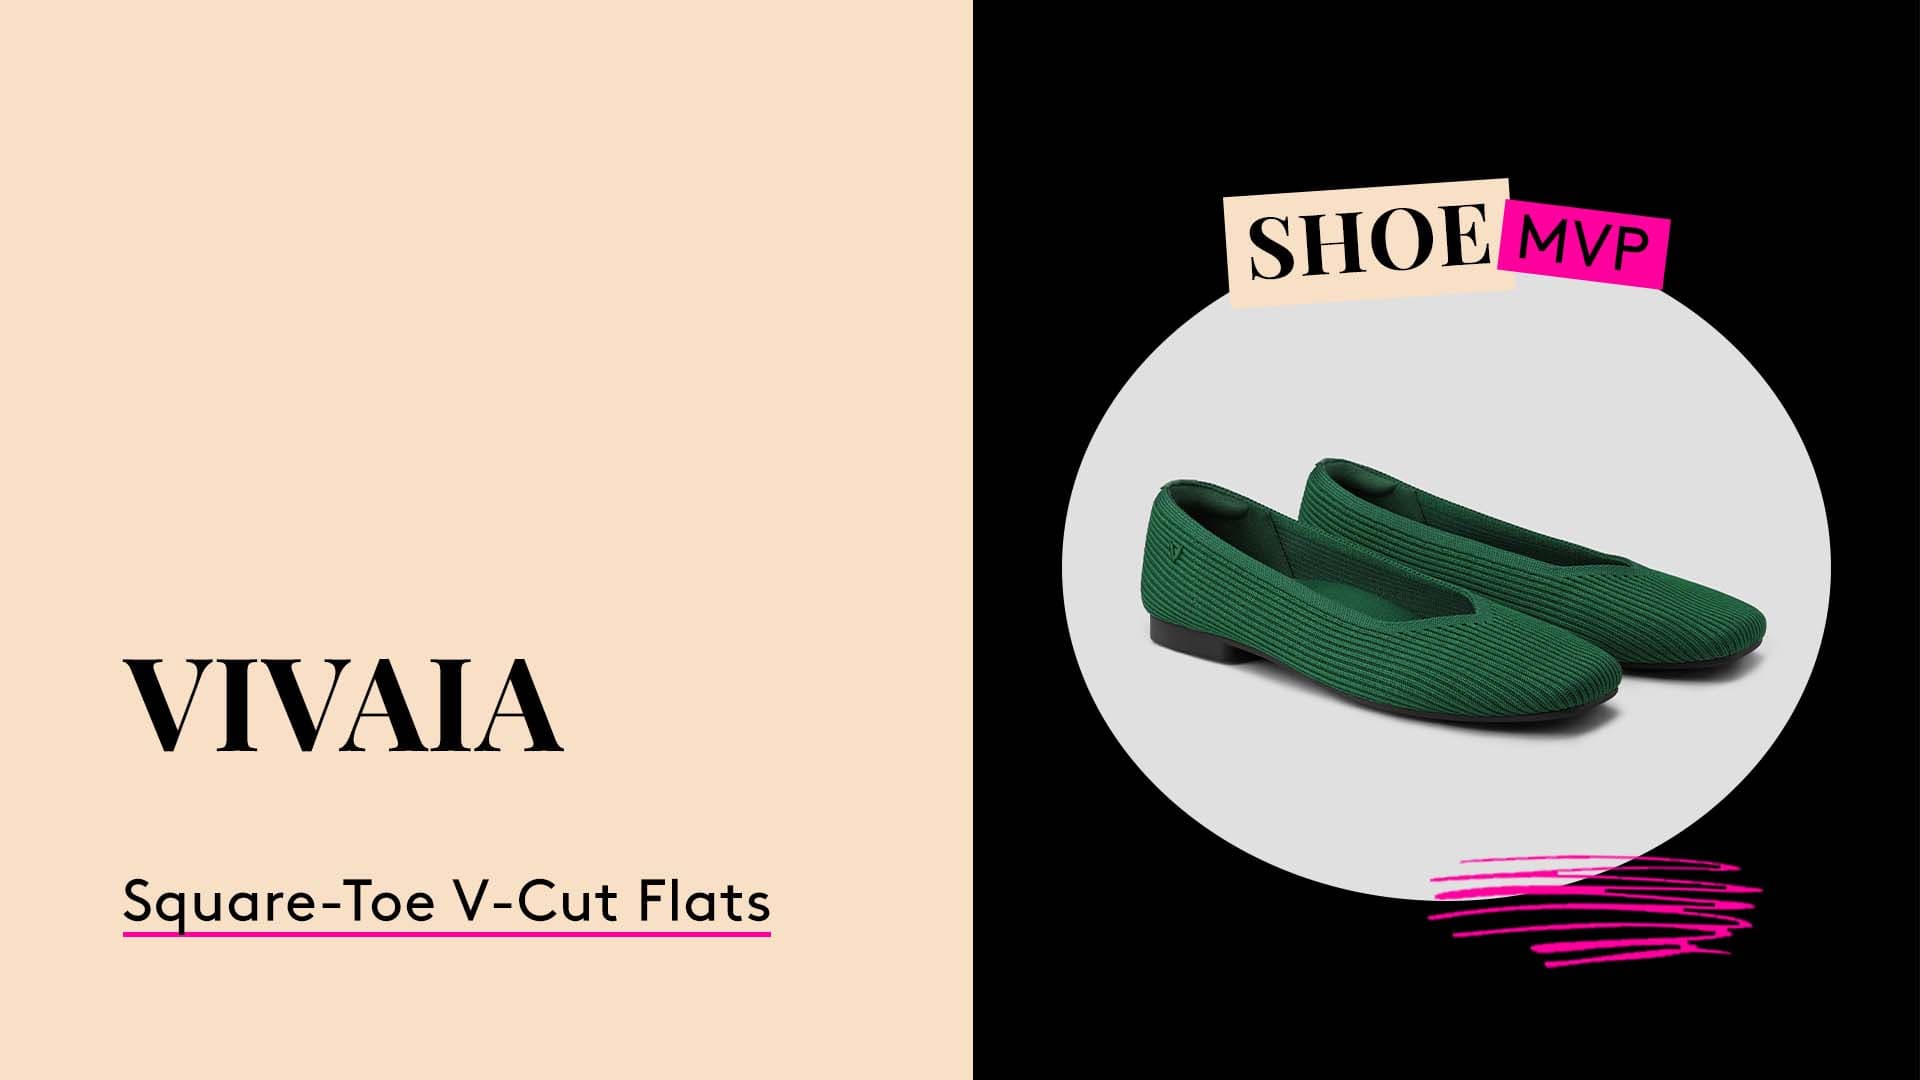 Shoe MVP.
Vivaia Square-Toe V-Cut Flats.